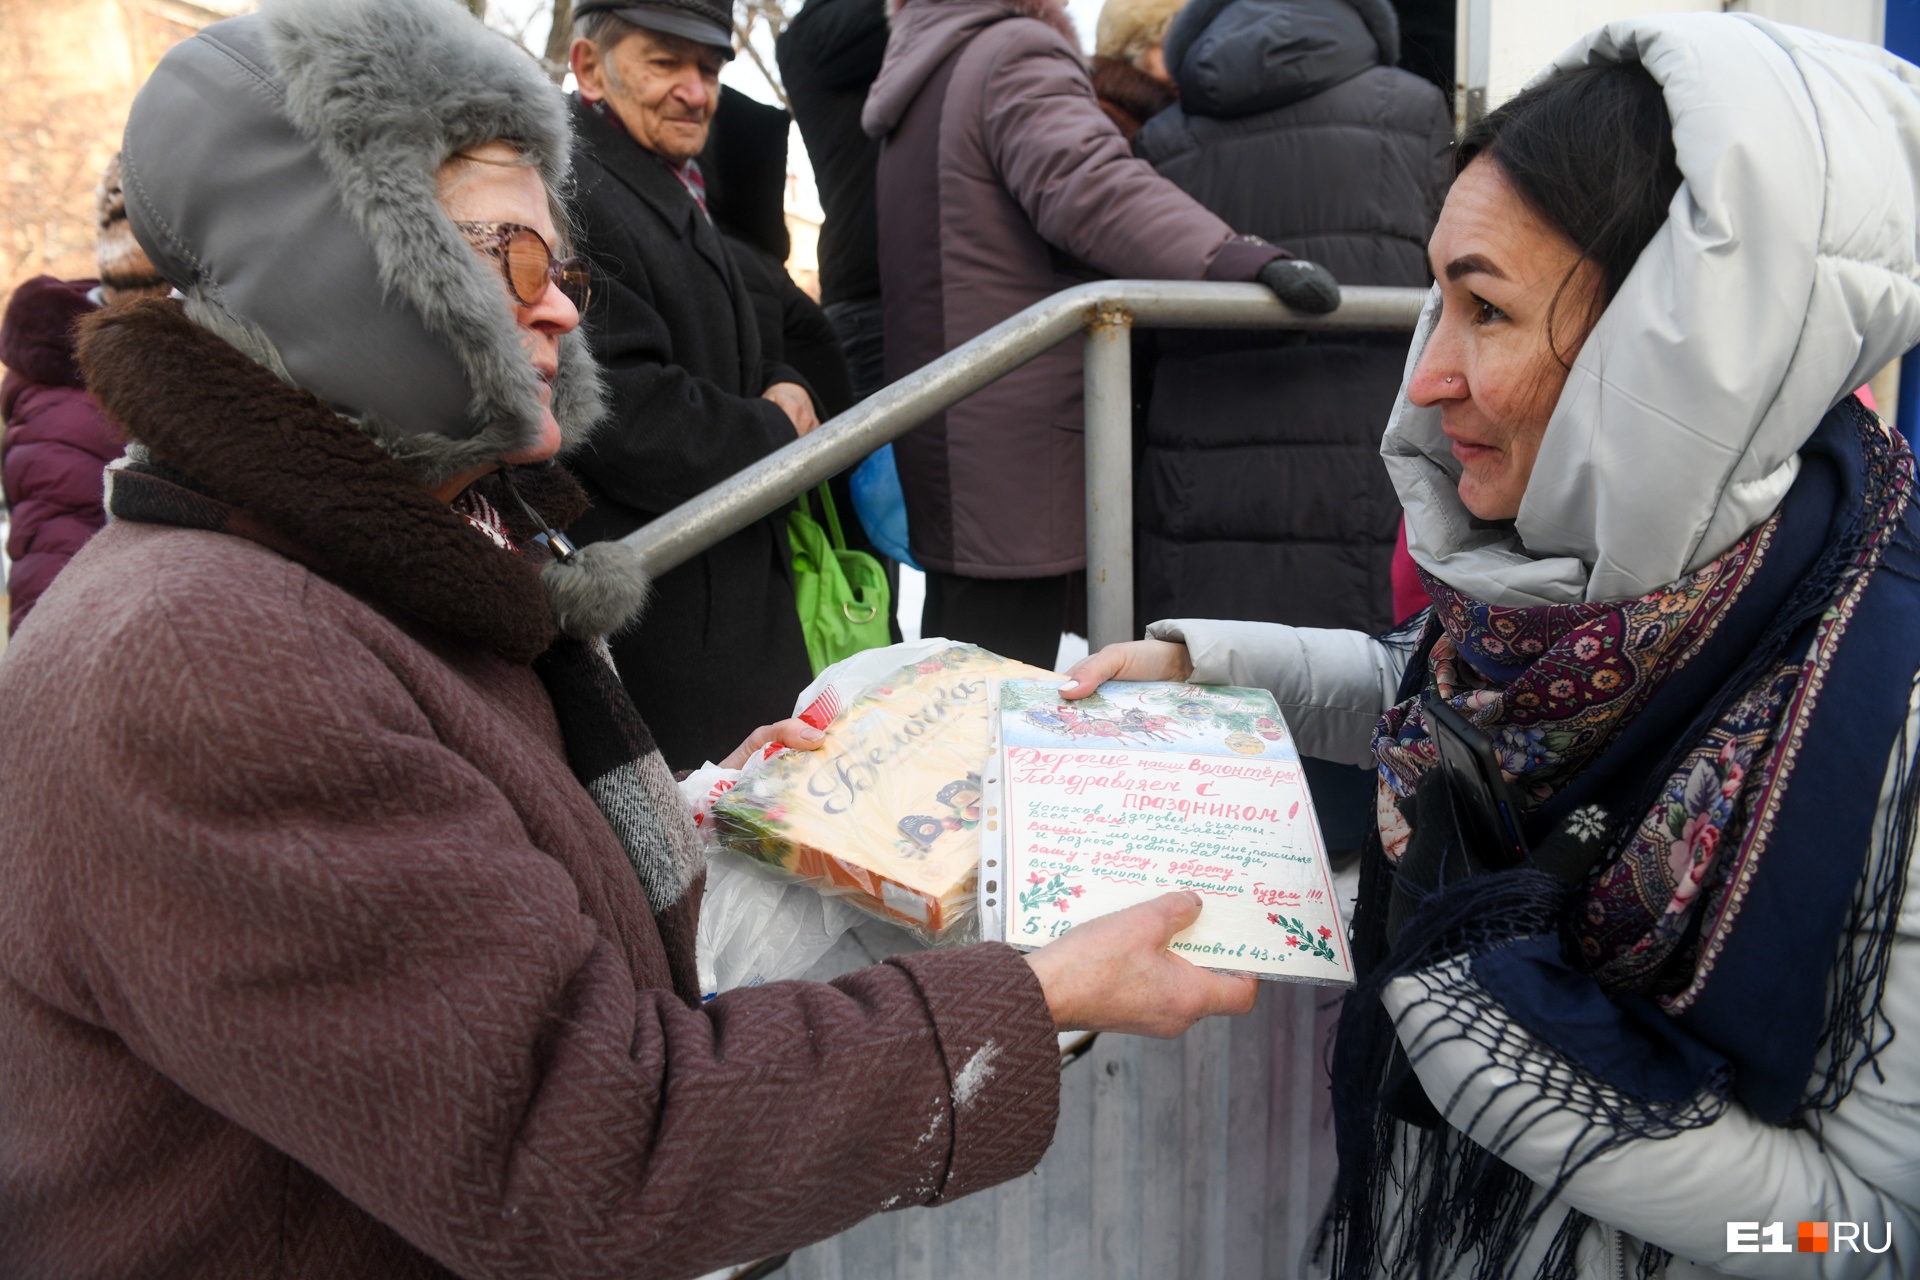 Одна из женщин поздравила сотрудников фонда «Люблю и благодарю» с Днем волонтера — он отмечается 5 декабря